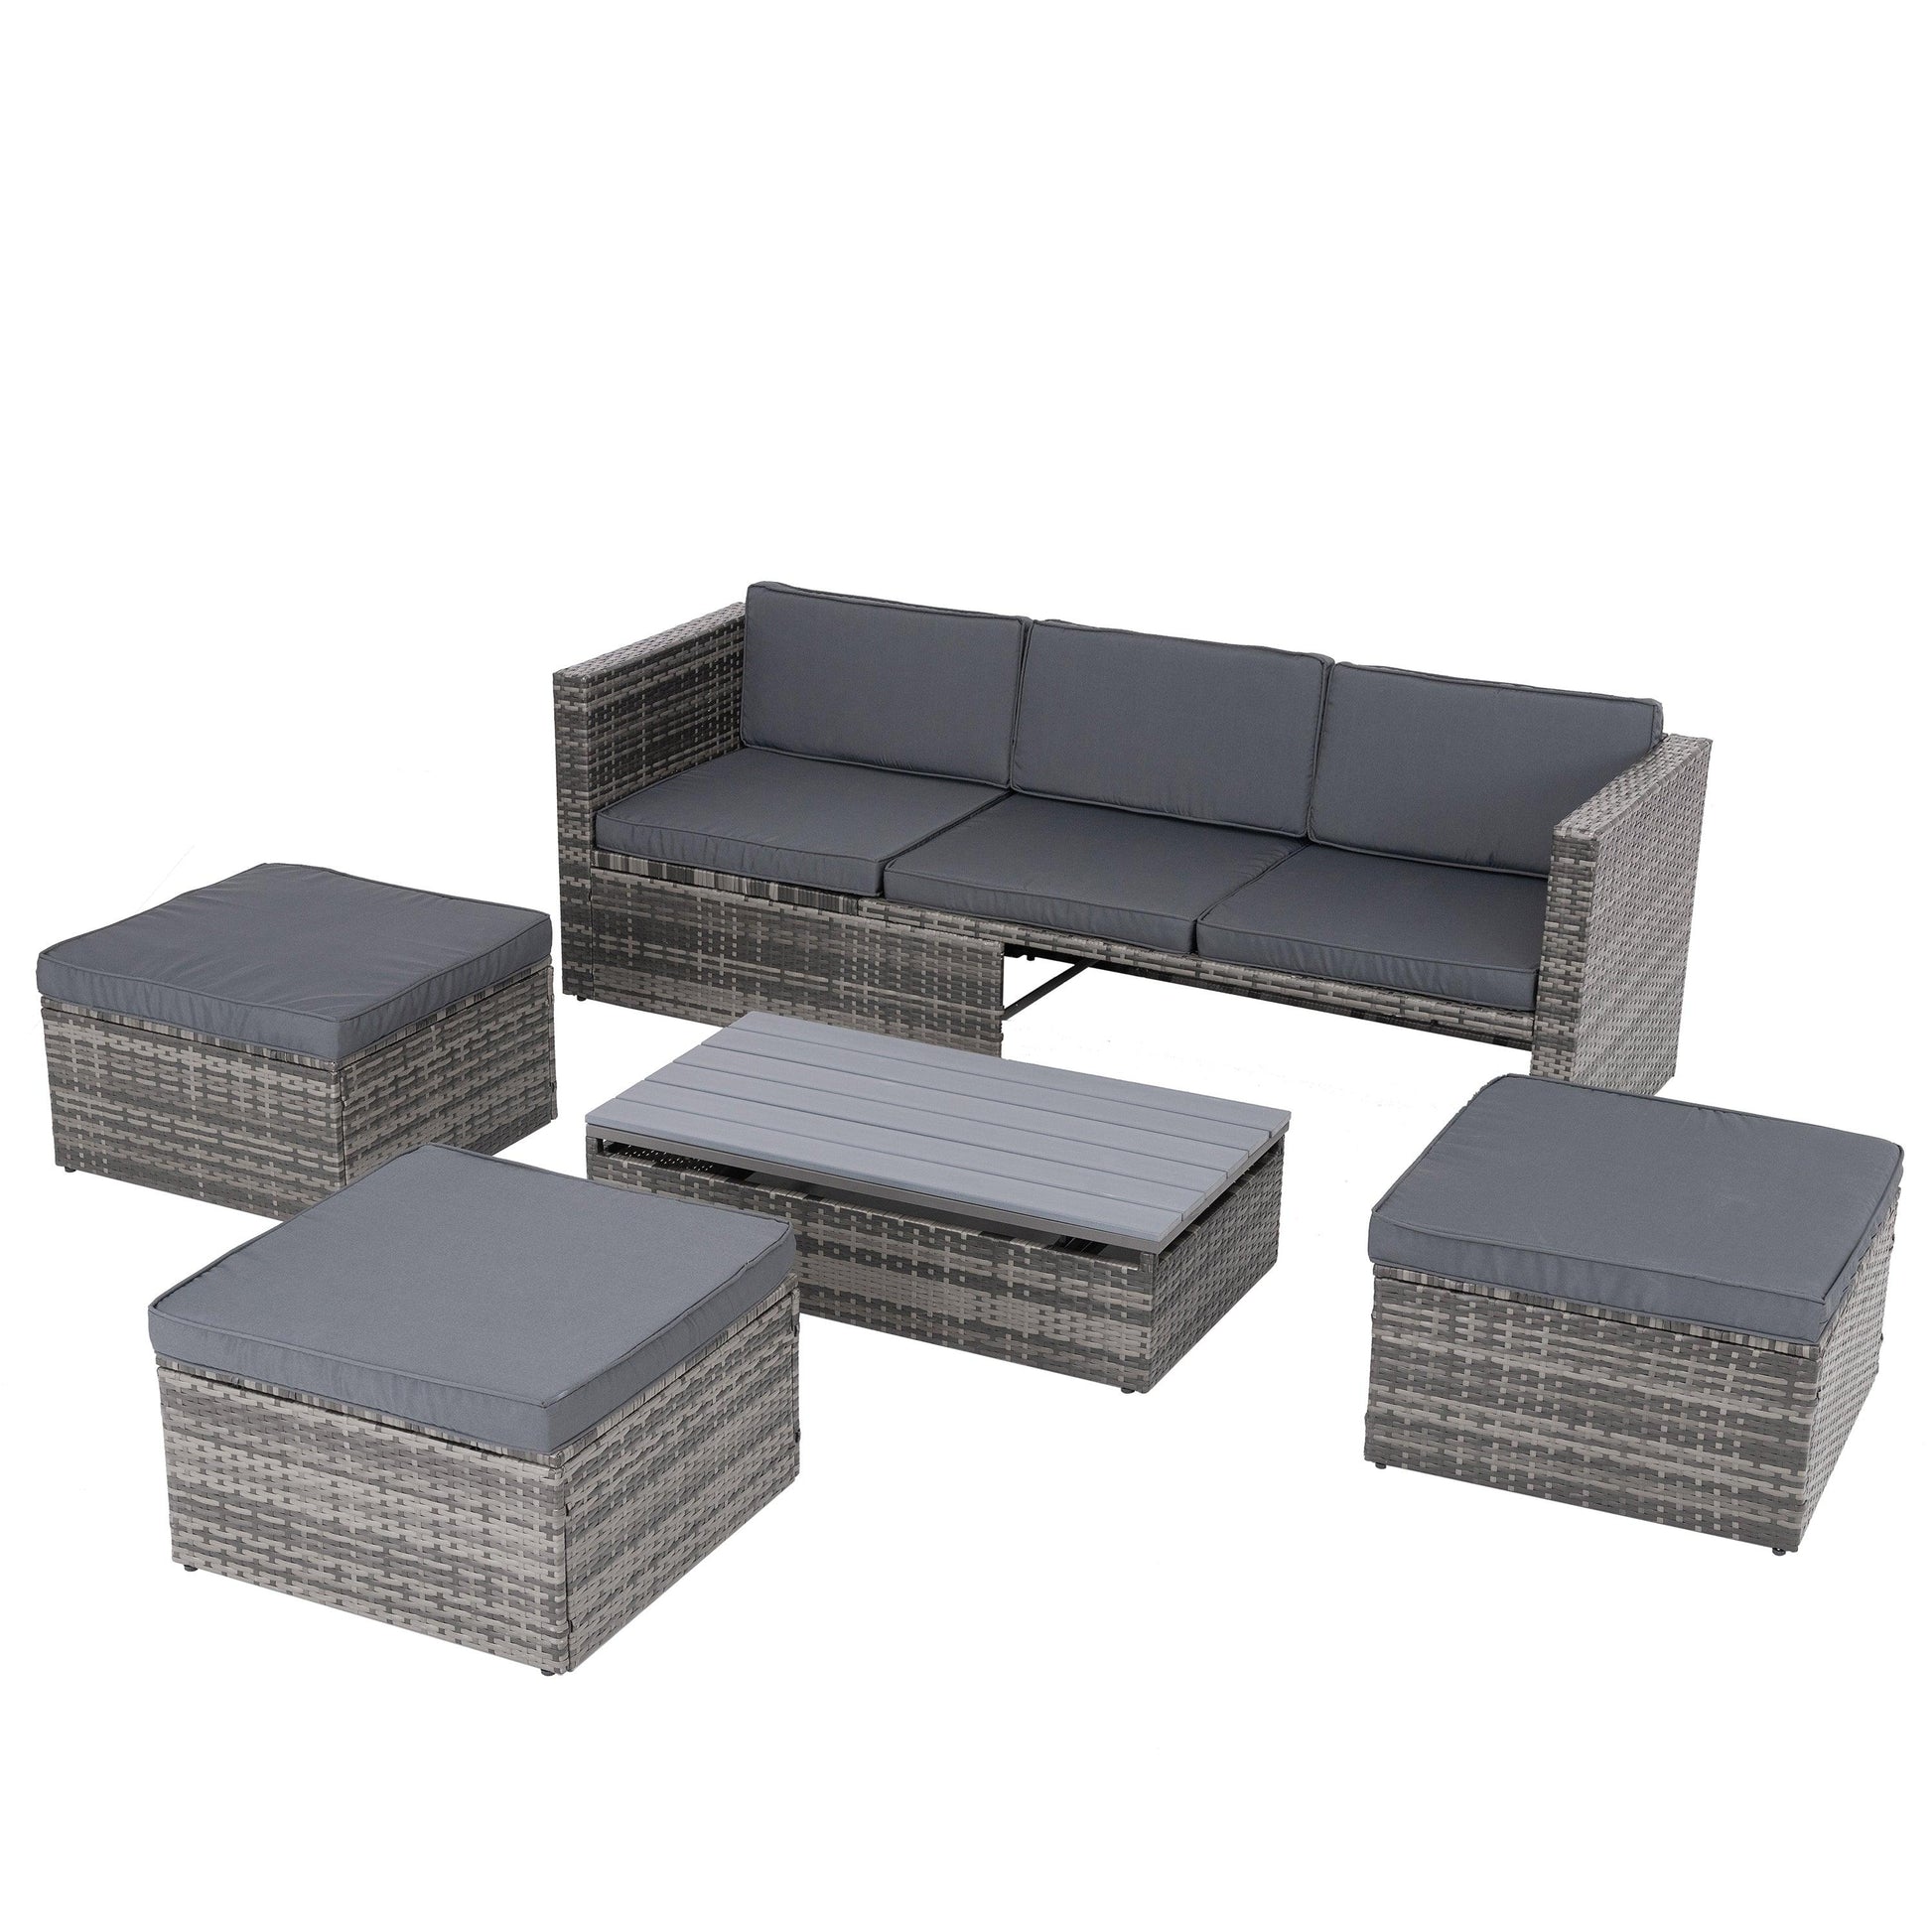 Patio Furniture, Outdoor Furniture, Seasonal PE Wicker Furniture,5 Set Wicker Furniture With Plywood Coffee Table - FurniFindUSA